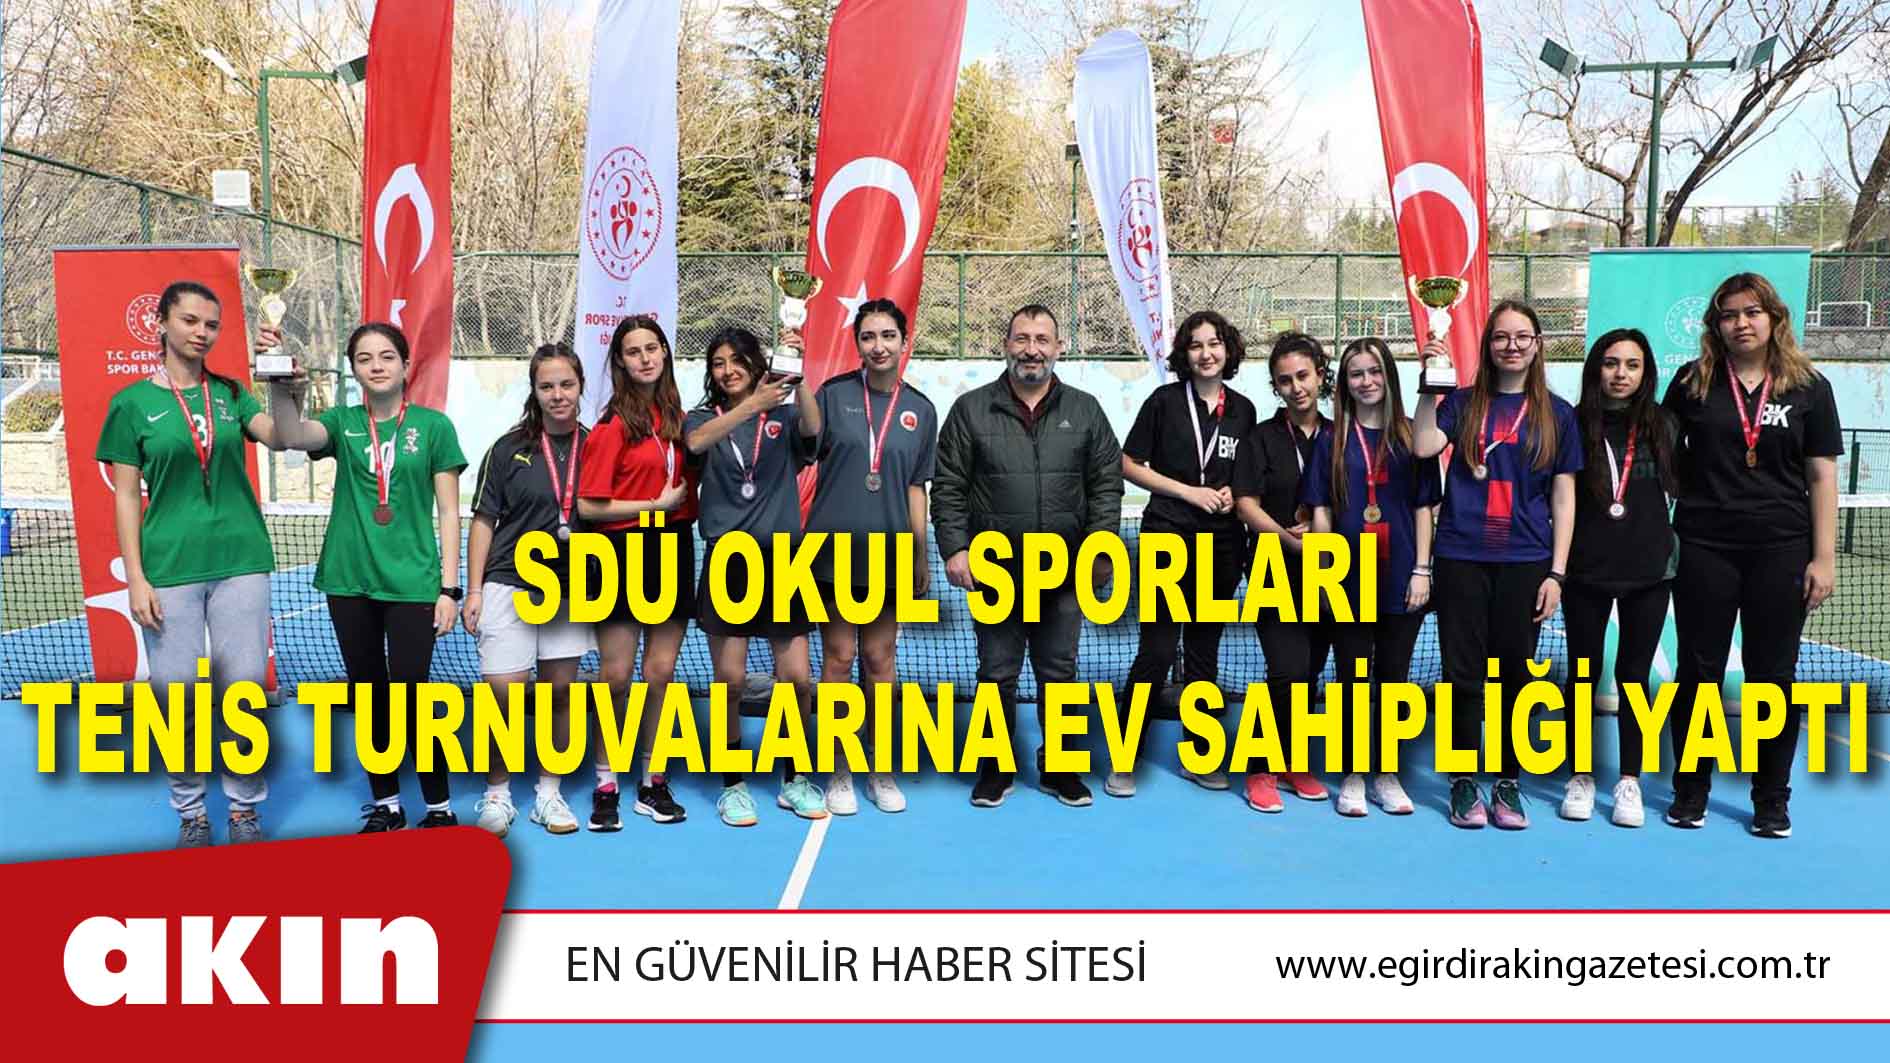 SDÜ Okul Sporları Tenis Turnuvalarına Ev Sahipliği Yaptı